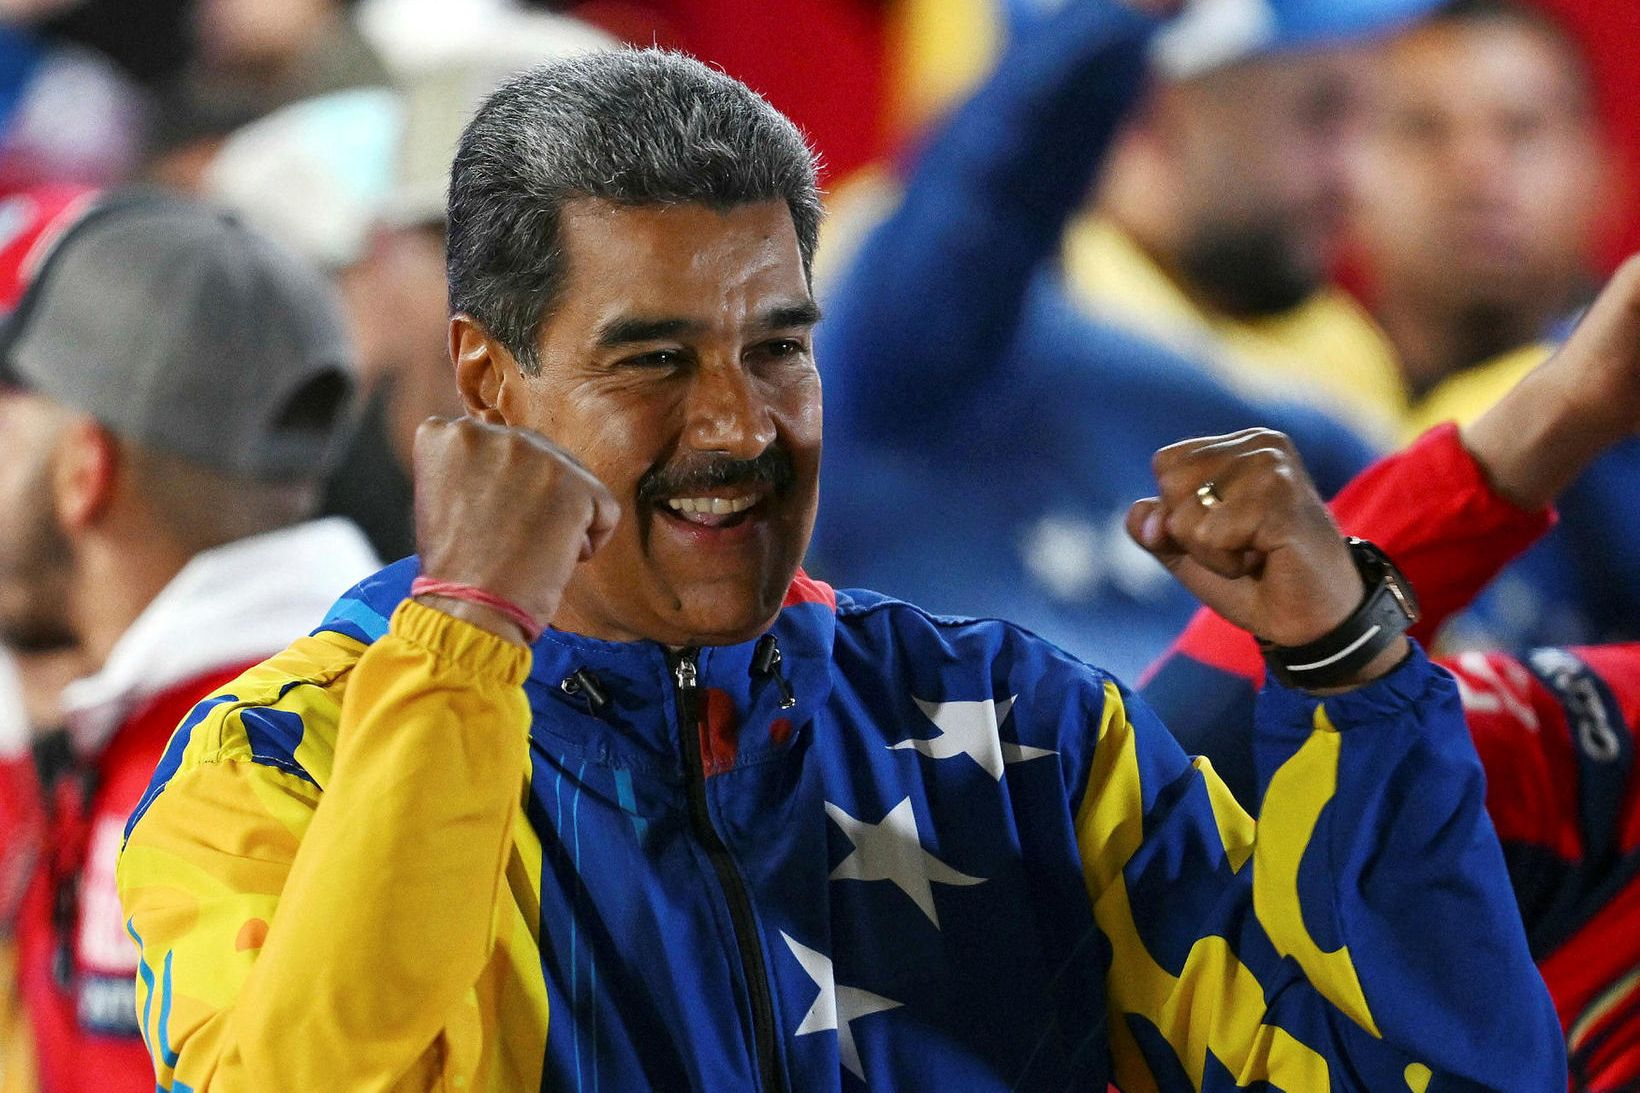 Maduro segist hafa fengið flest atkvæði.